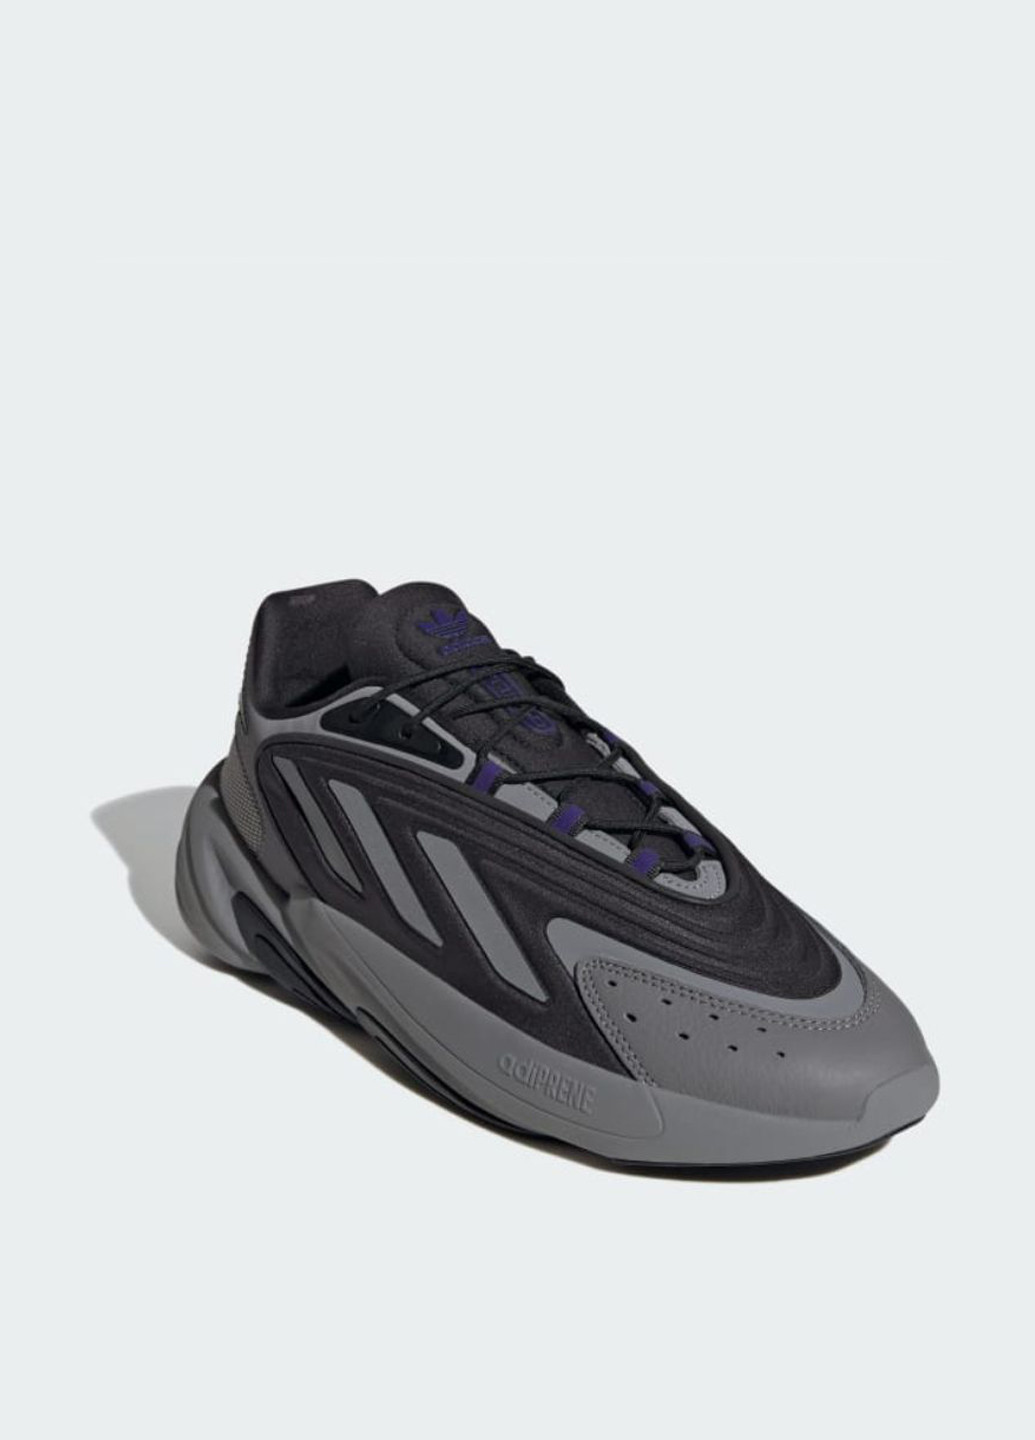 Цветные всесезонные кроссовки if8671_2024 adidas Ozelia Black/Grey